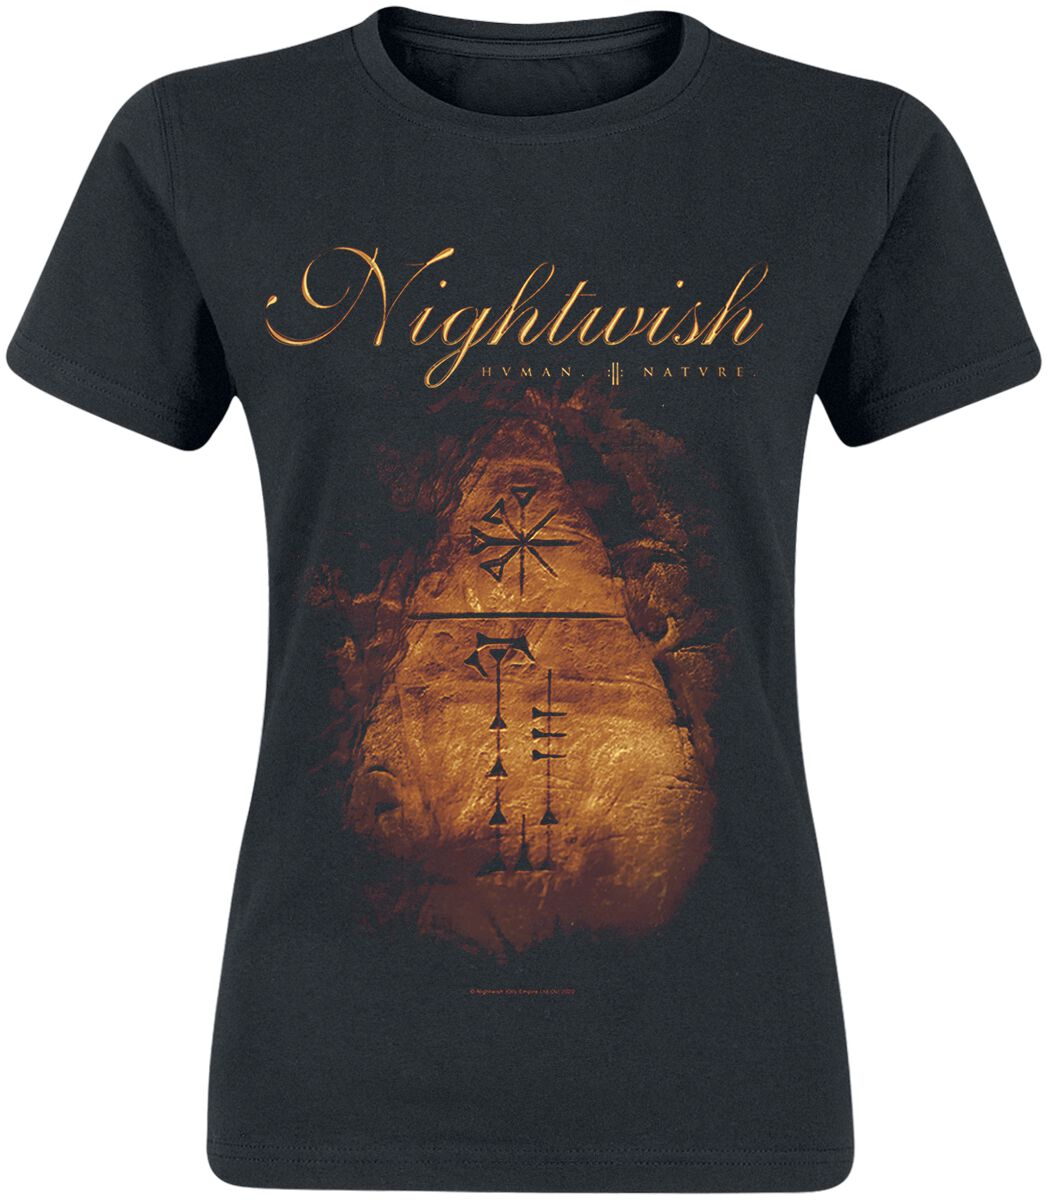 Nightwish Human. :||: Nature. T-Shirt schwarz